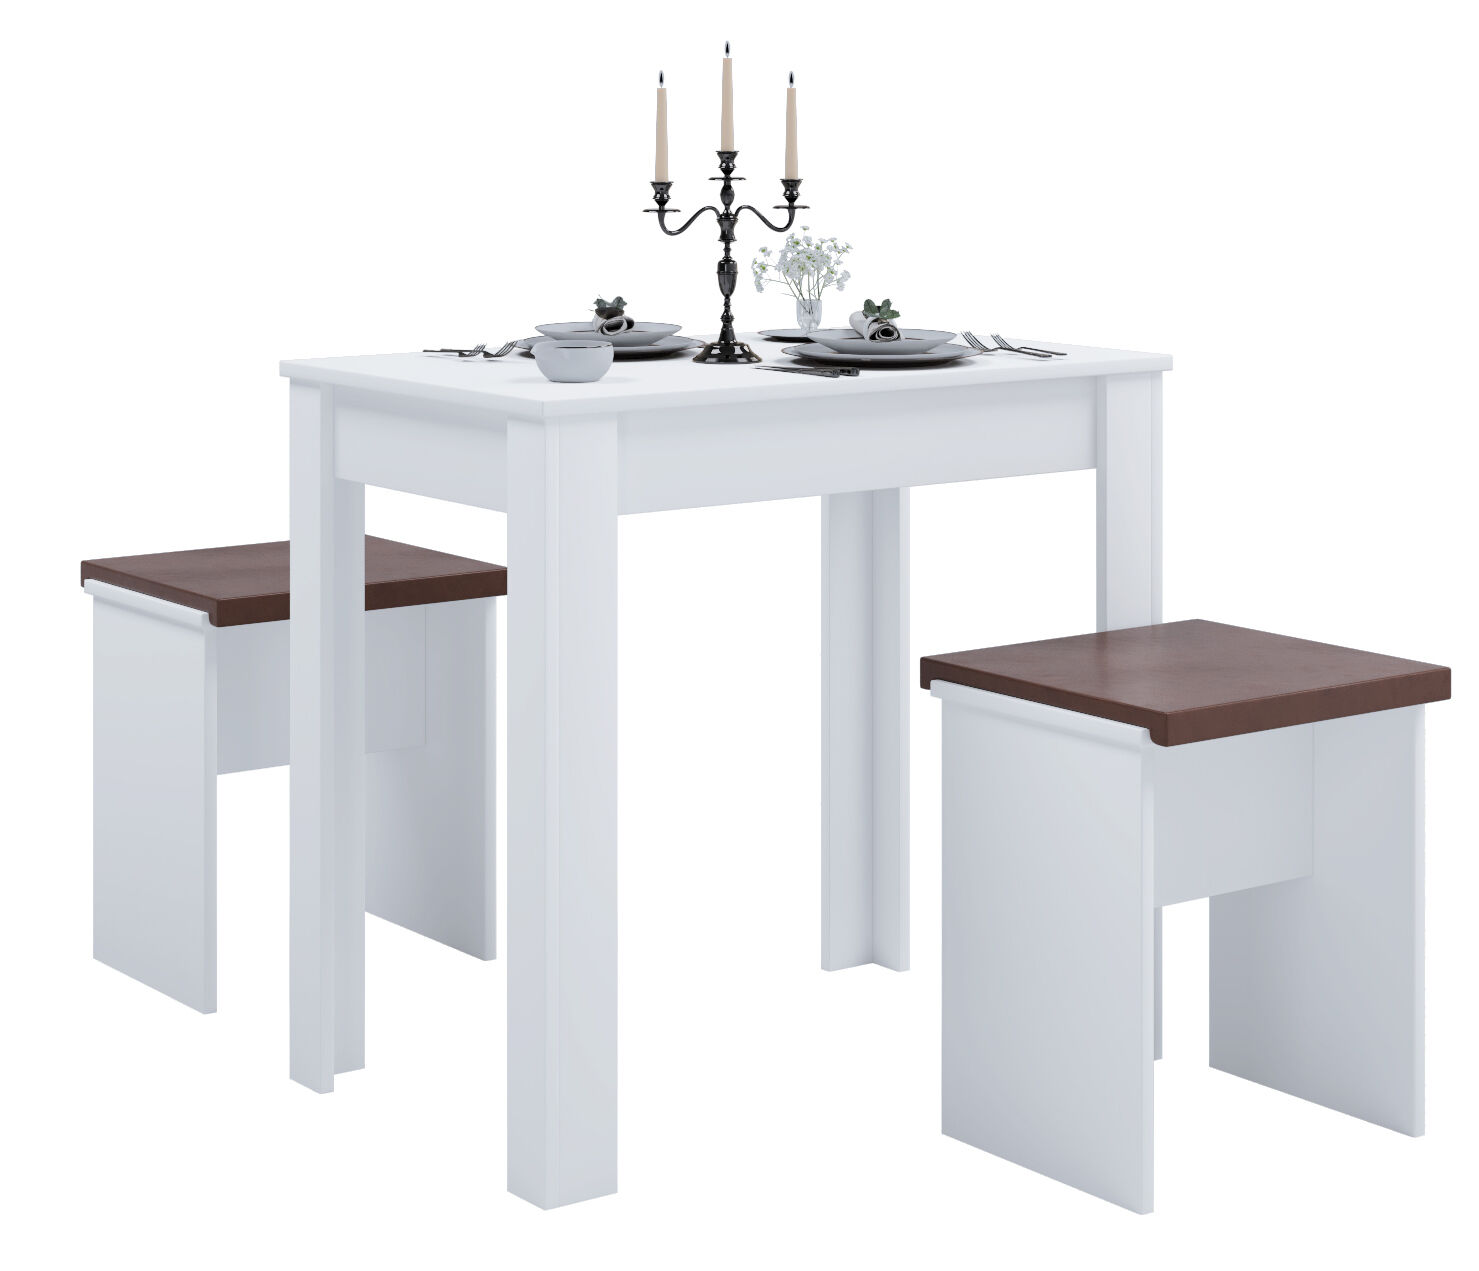 Esal spisegrupper spisebord og 2 skamler hvit.